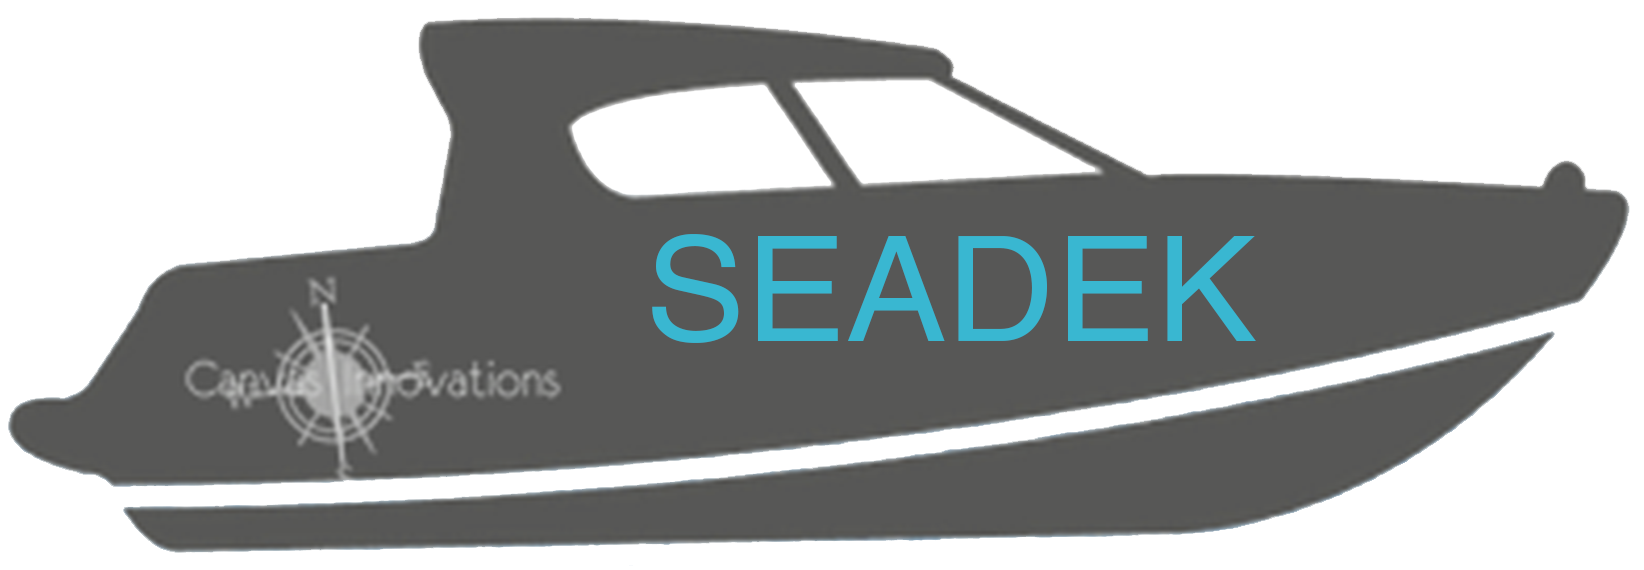 SeaDek Image